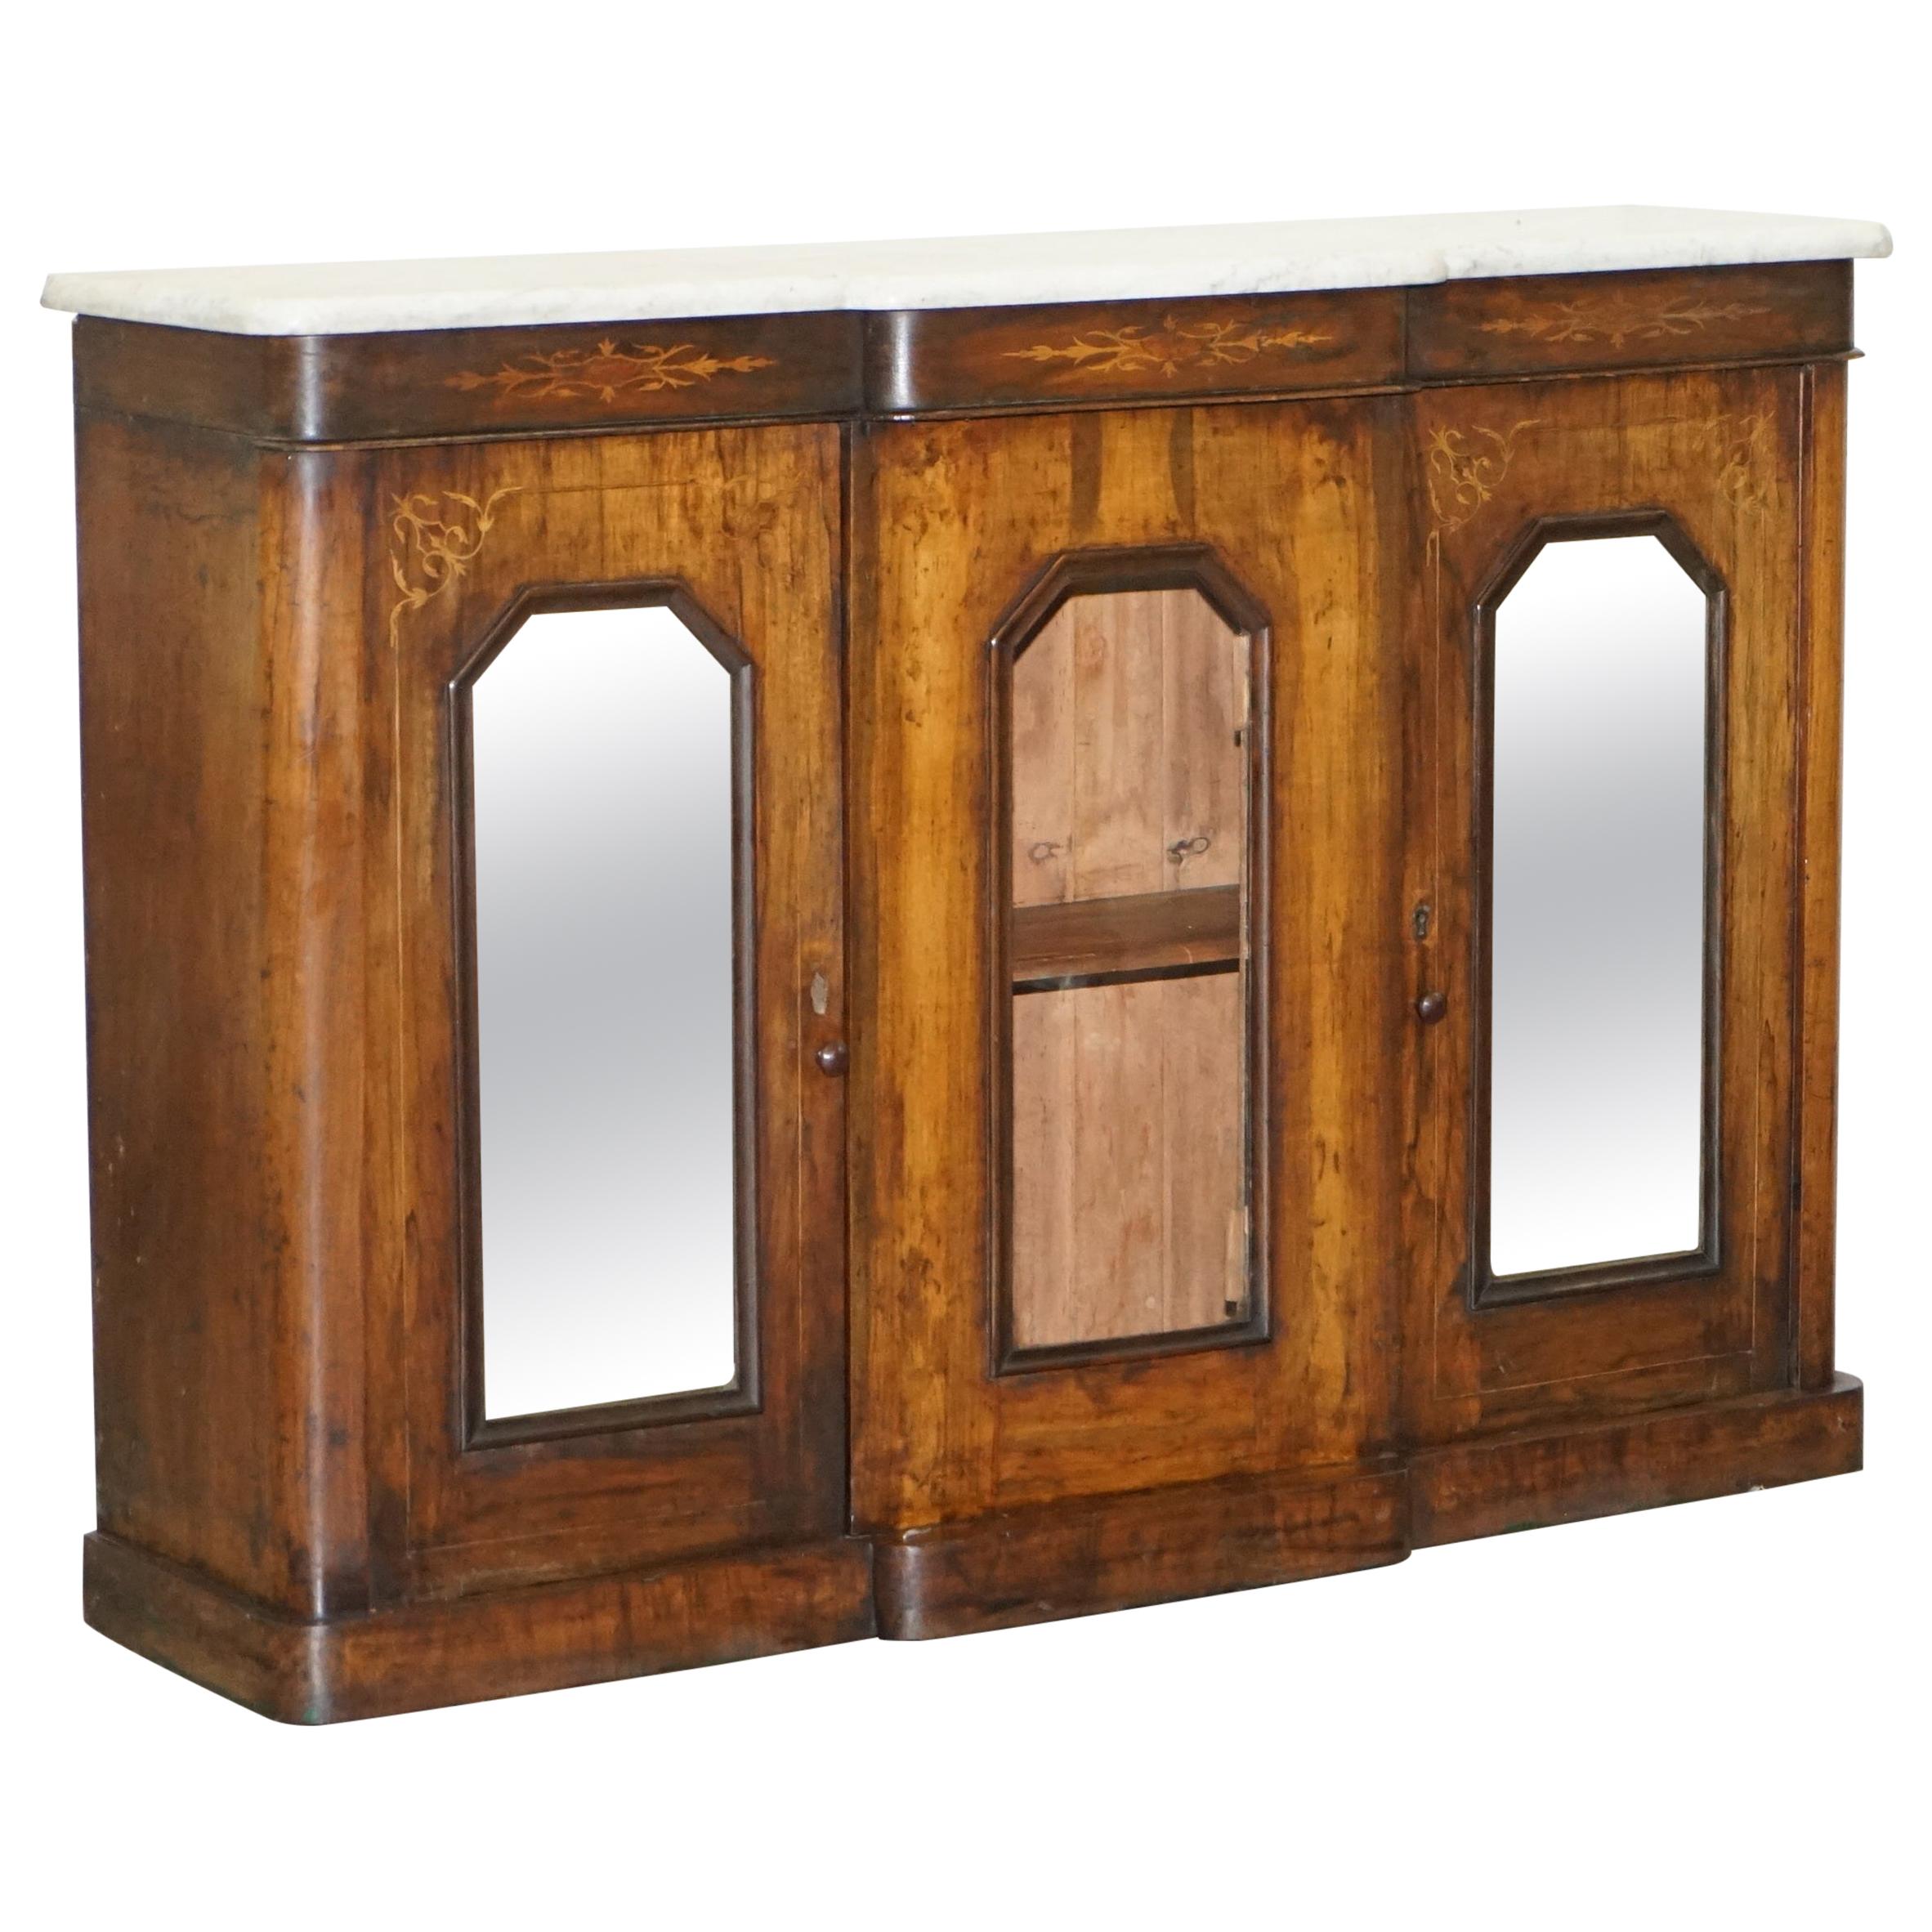 Anrichte/ Sideboard/ Schrank aus Nussbaum und Marmor im Regency-Stil mit verspiegelten Türen